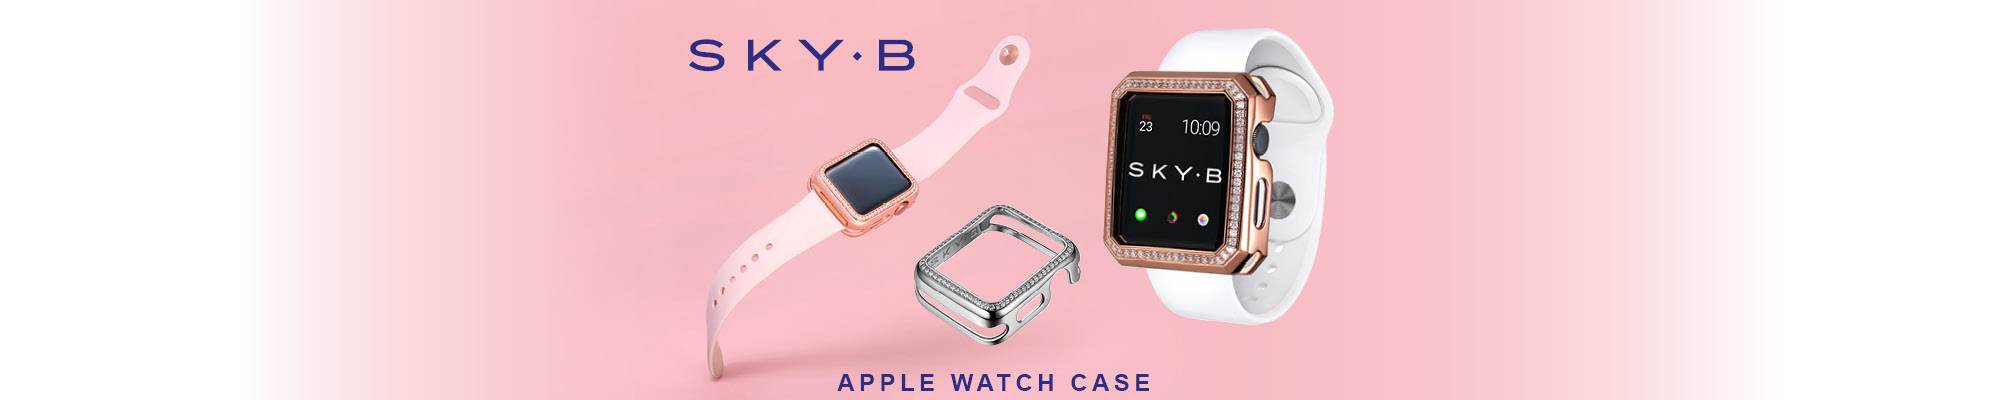 Sky-B - Apple Watch Case